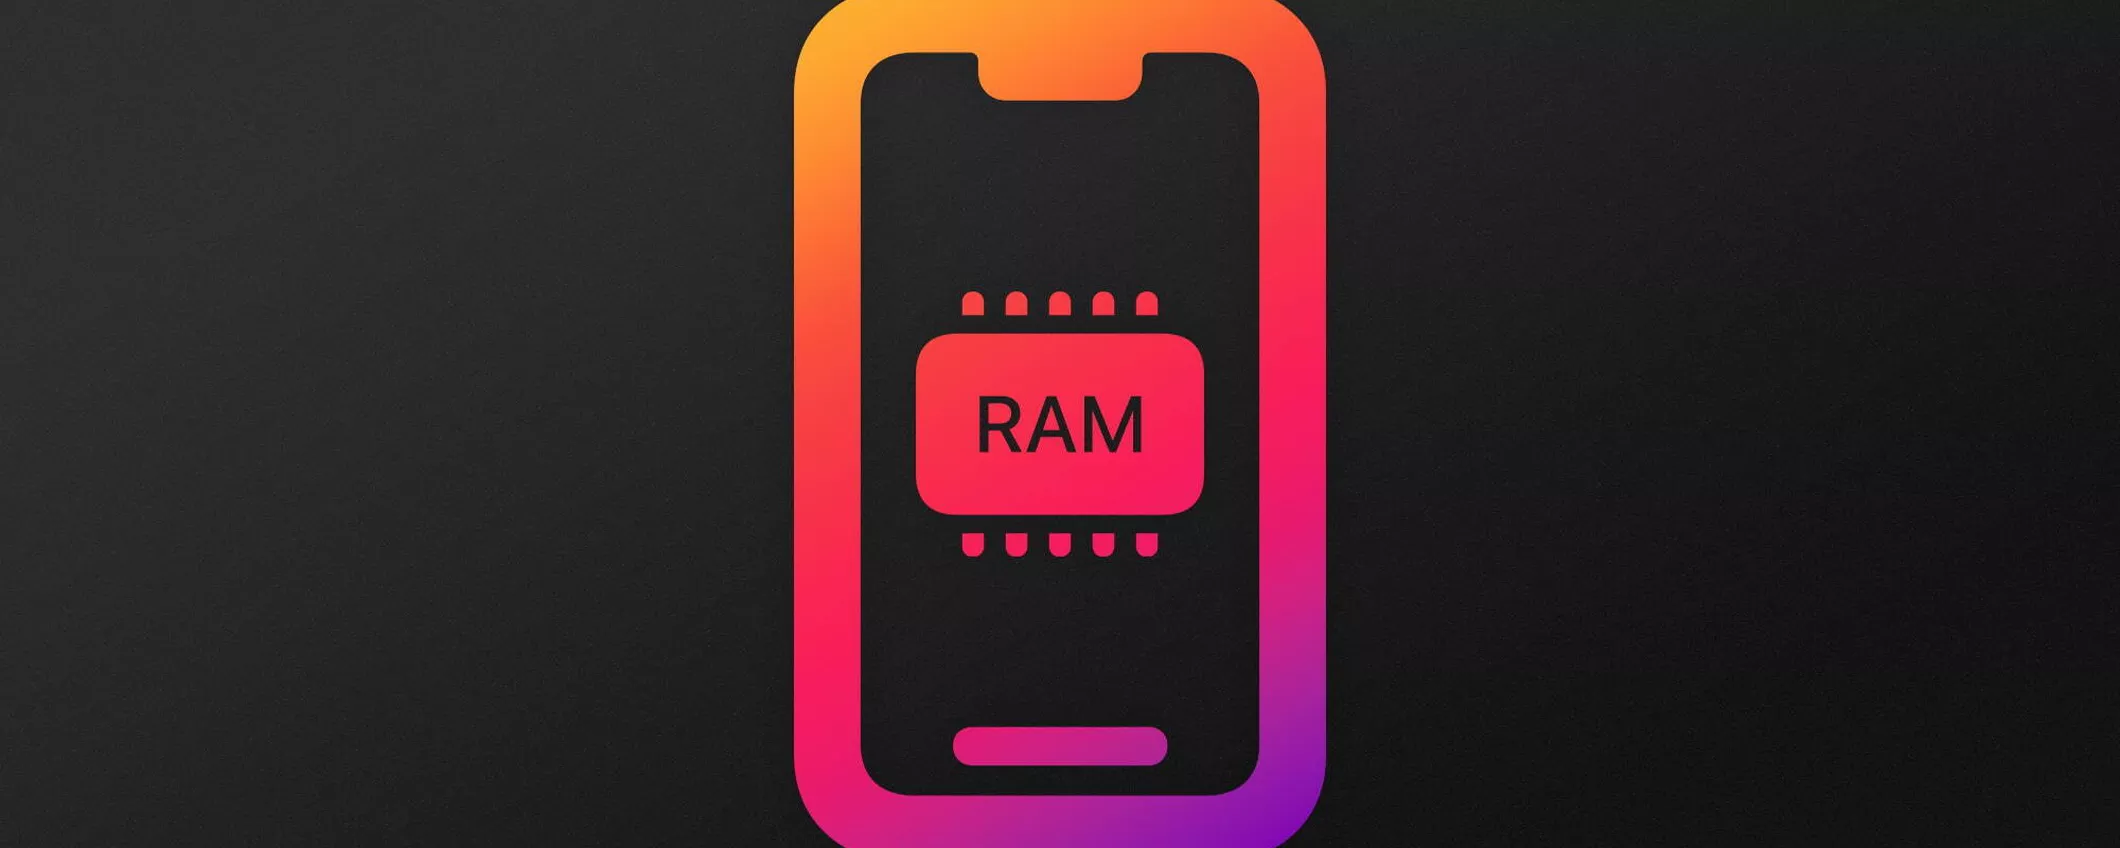 Quanta memoria RAM ha il tuo iPhone? Ecco la risposta!